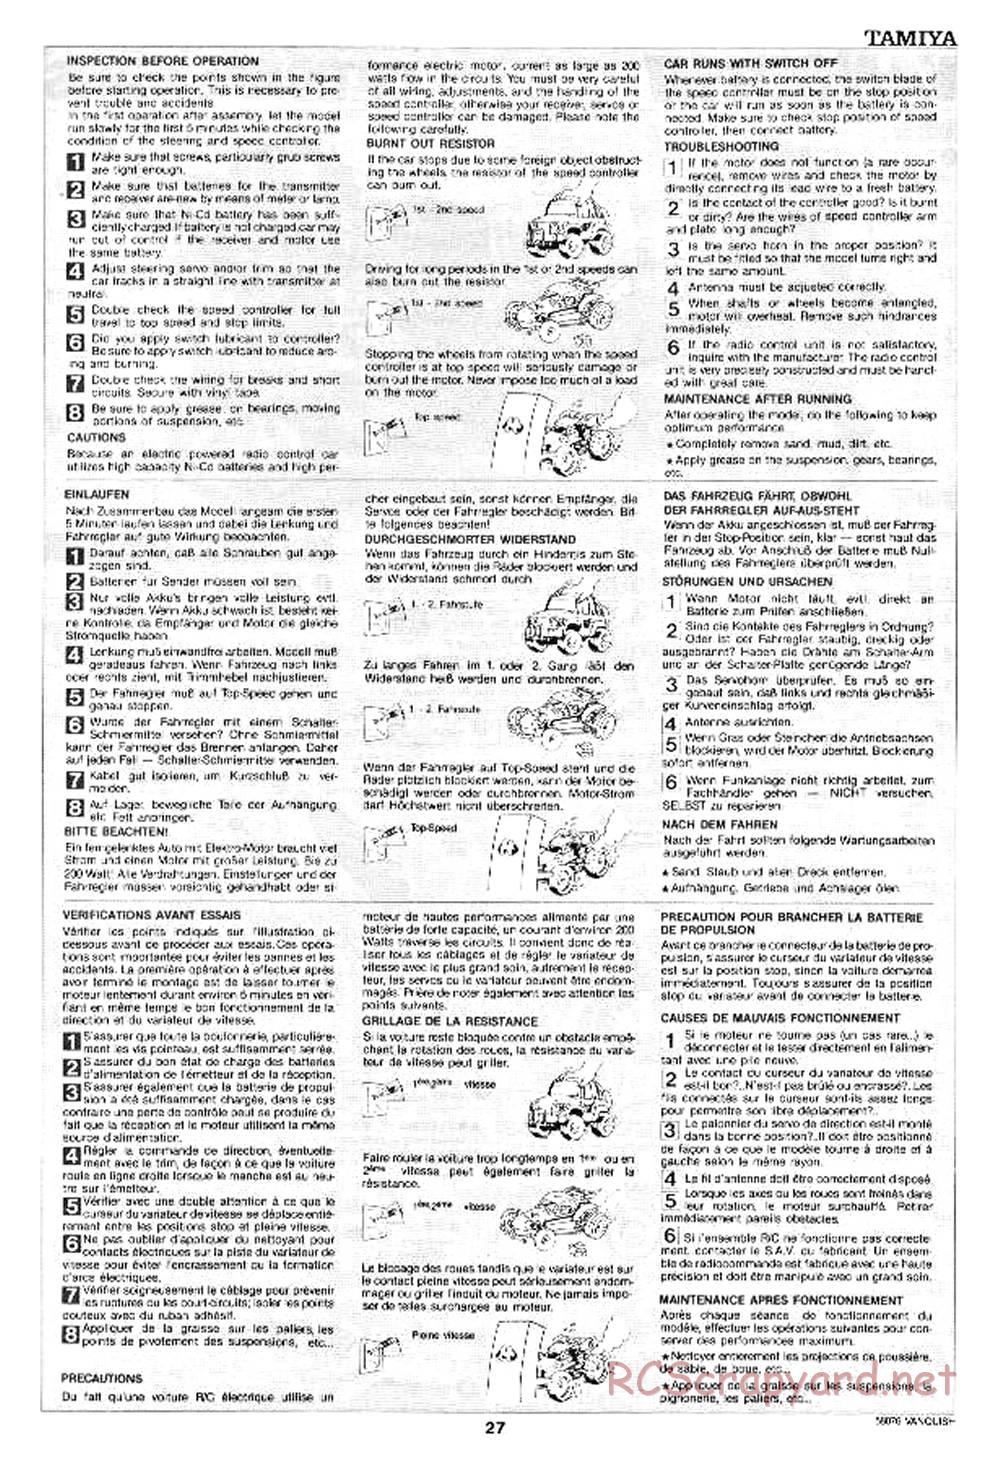 Tamiya - Vanquish - 58076 - Manual - Page 27